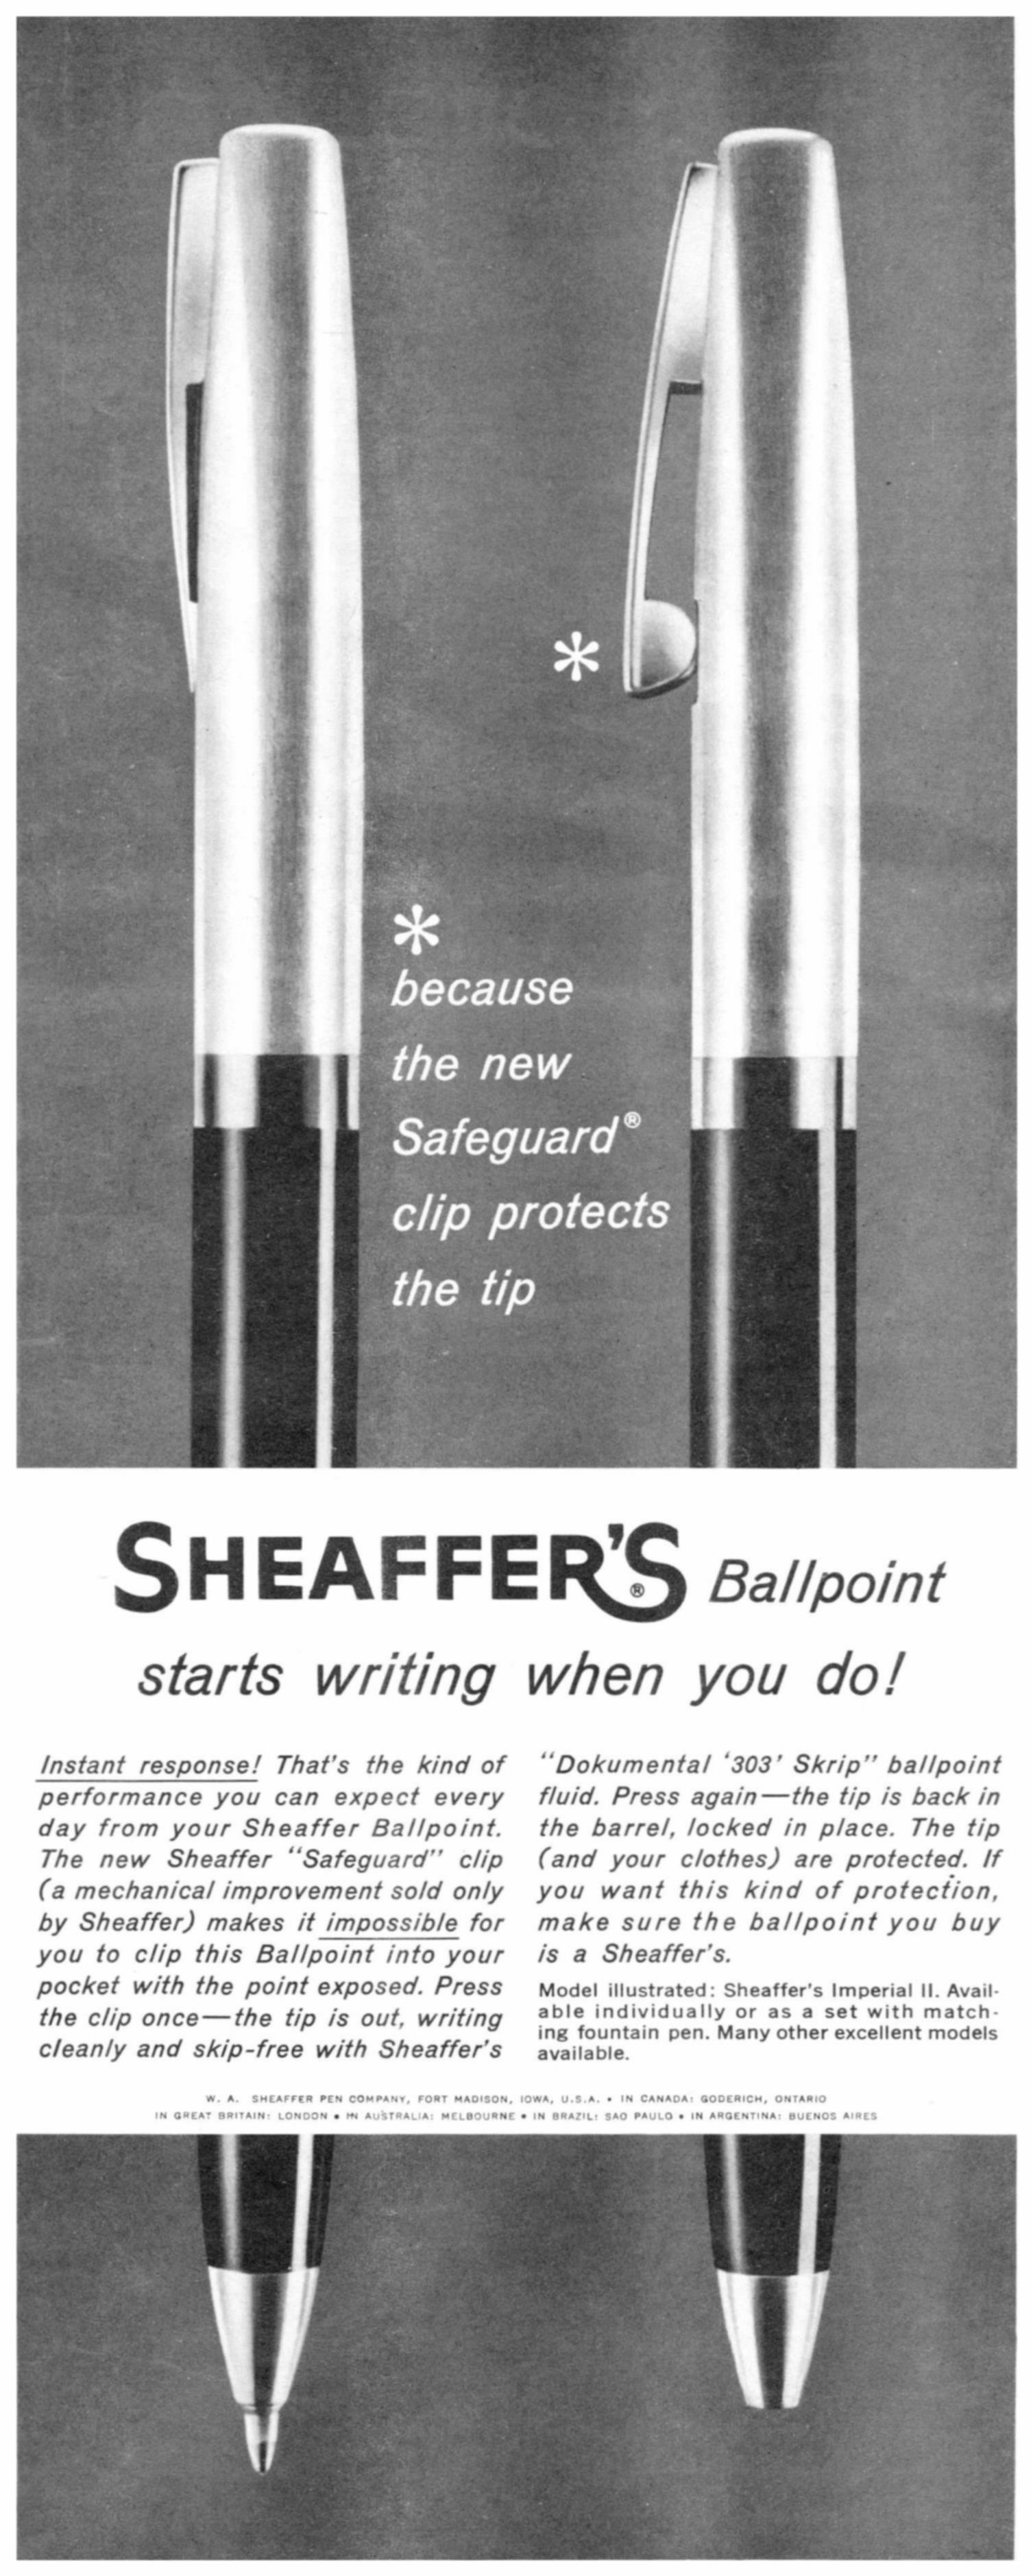 Sheaffer 1963 0.jpg